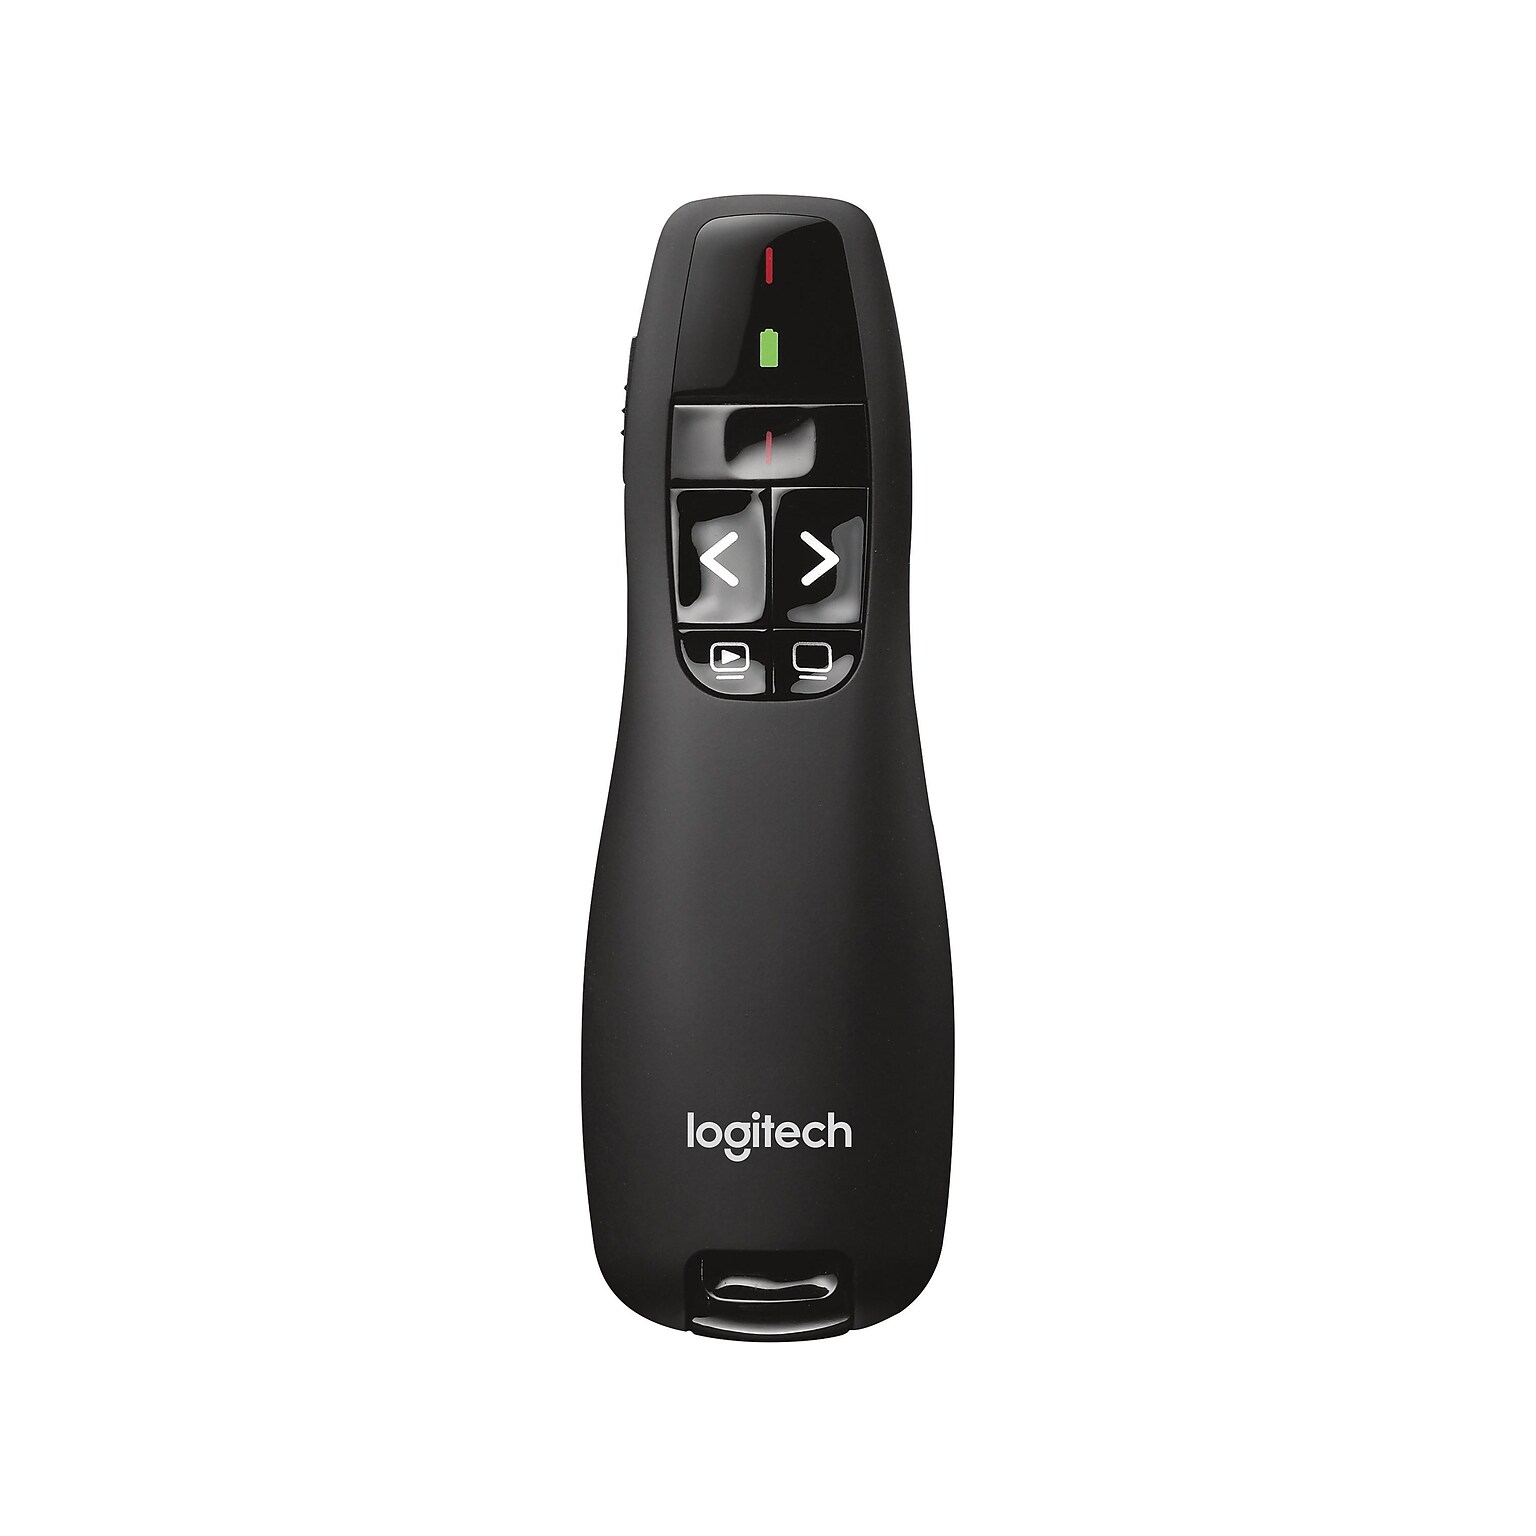 Logitech R400 Presenter w/Laser Pointer, Black (910-001354)